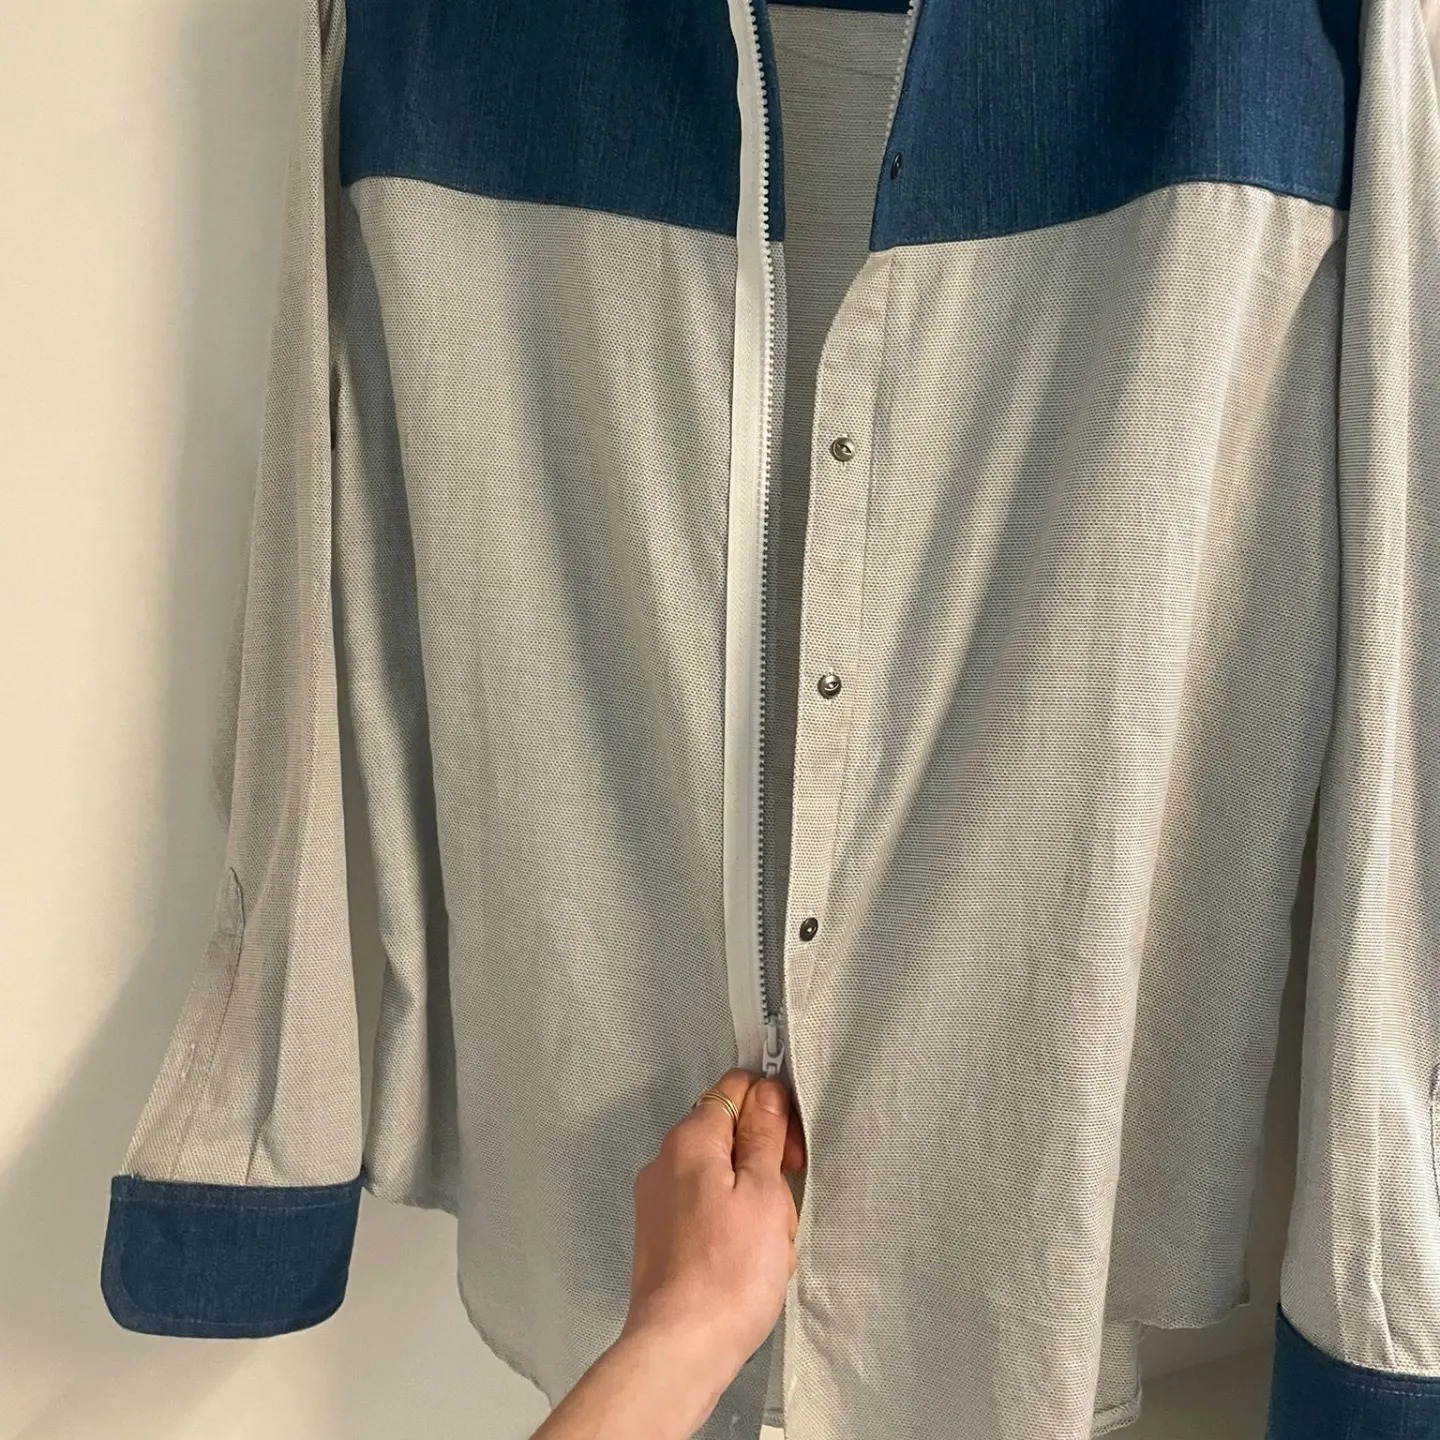 Exemple de chemise avec une fermeture à zip